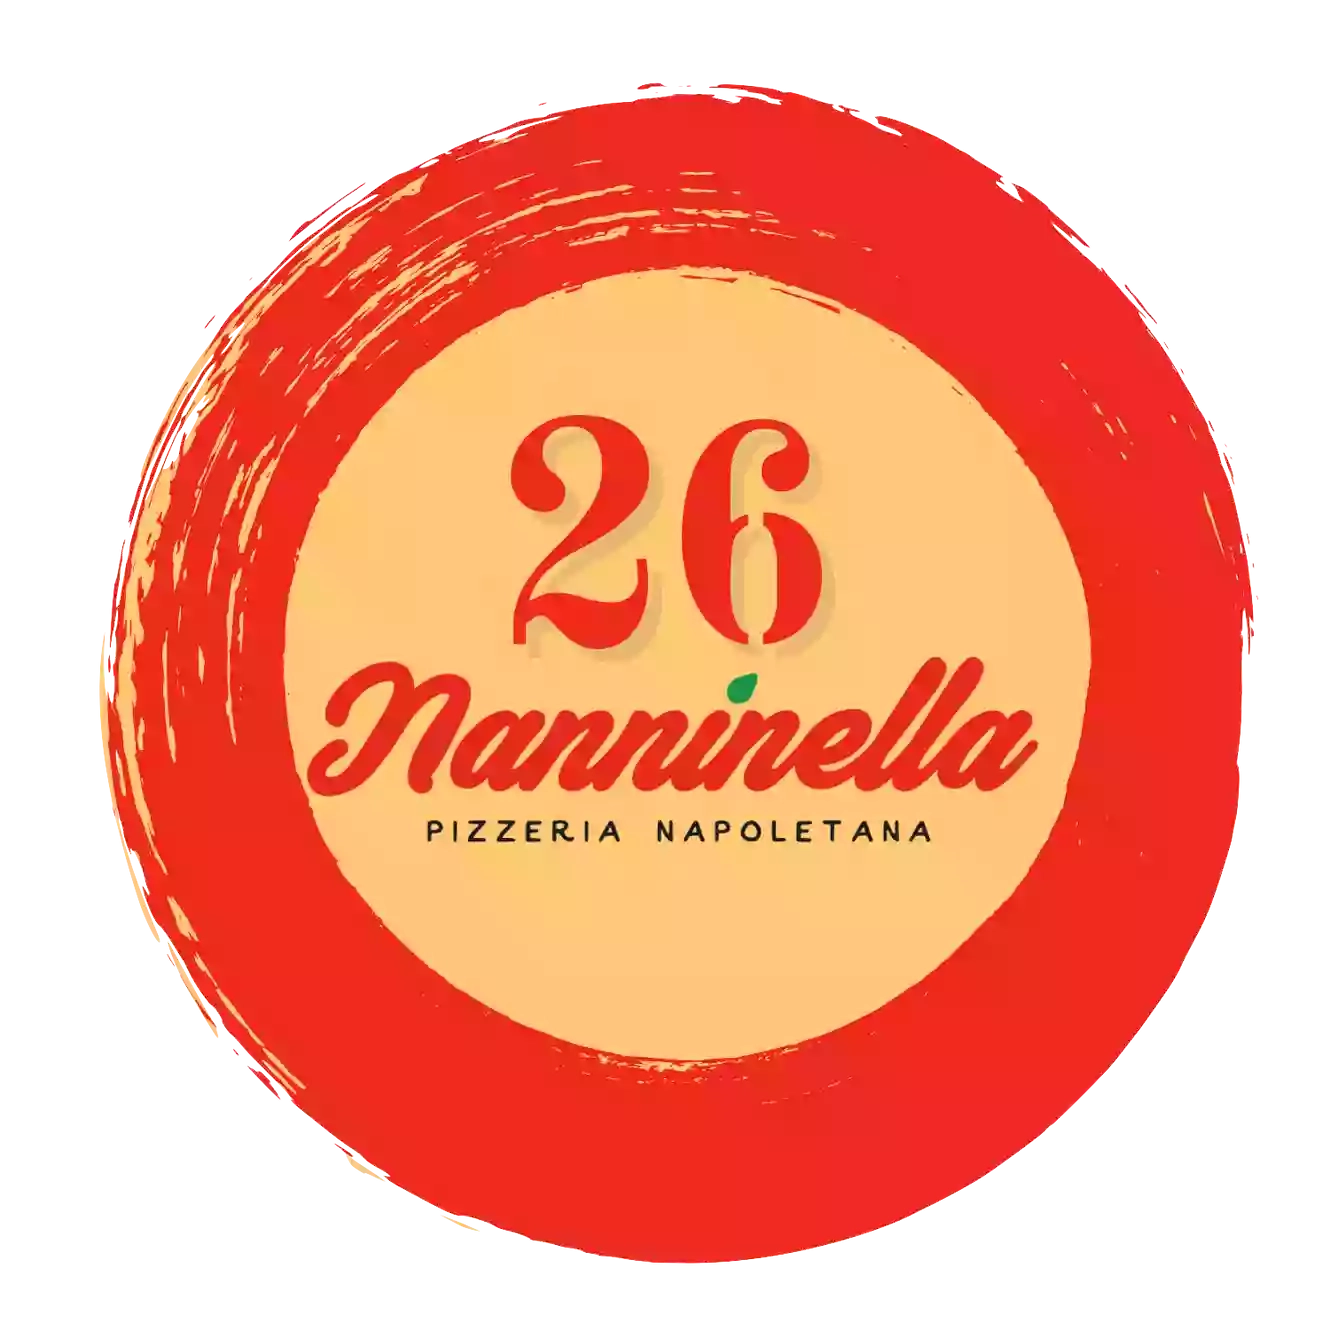 Nanninella Pizzeria Napoletana